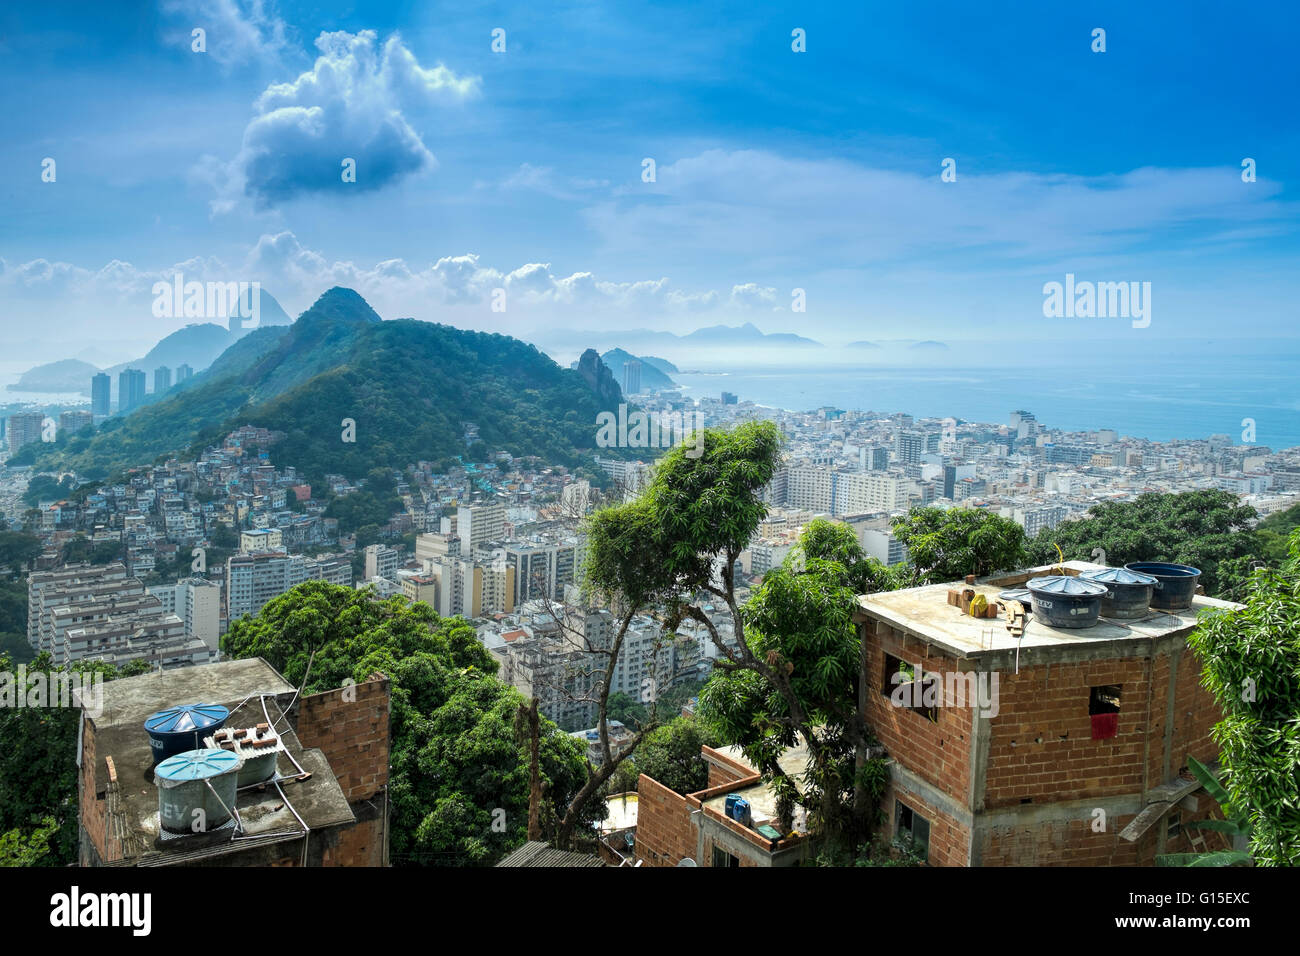 Rio de Janeiro from Cabritos favela in Copacabana, Moro Sao Joao and Sugar Loaf in the foreground, Rio de Janeiro, Brazil Stock Photo